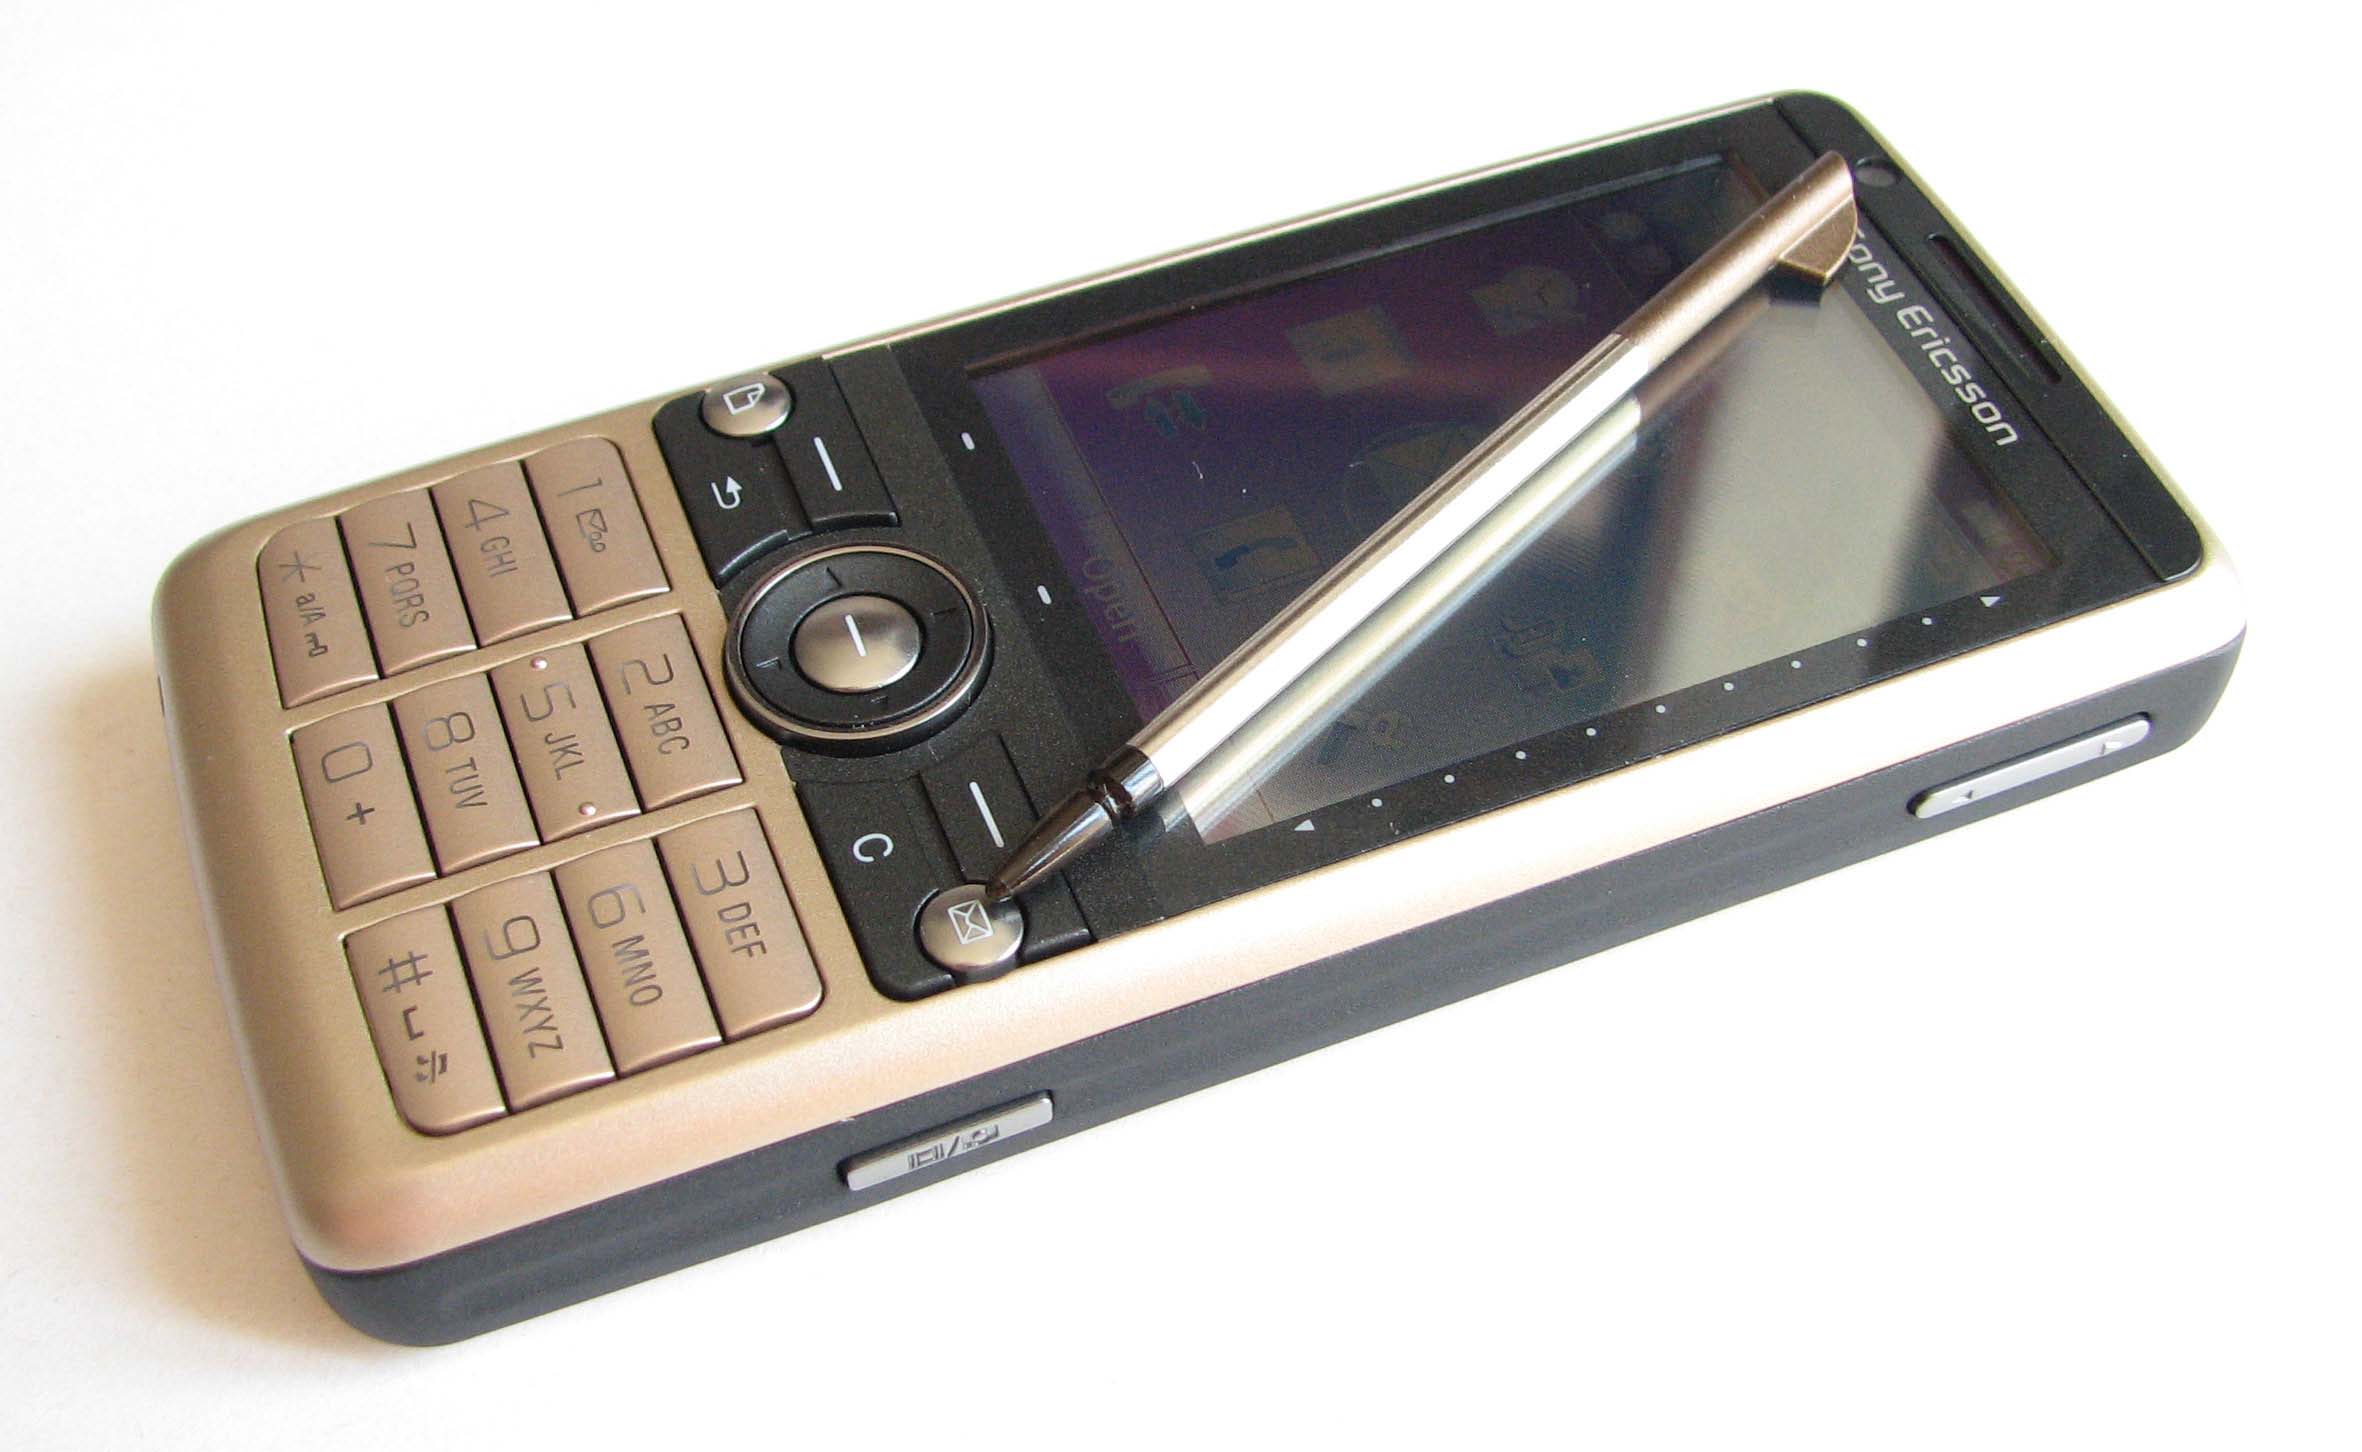 Sony-Ericsson G700 ringtones free download.